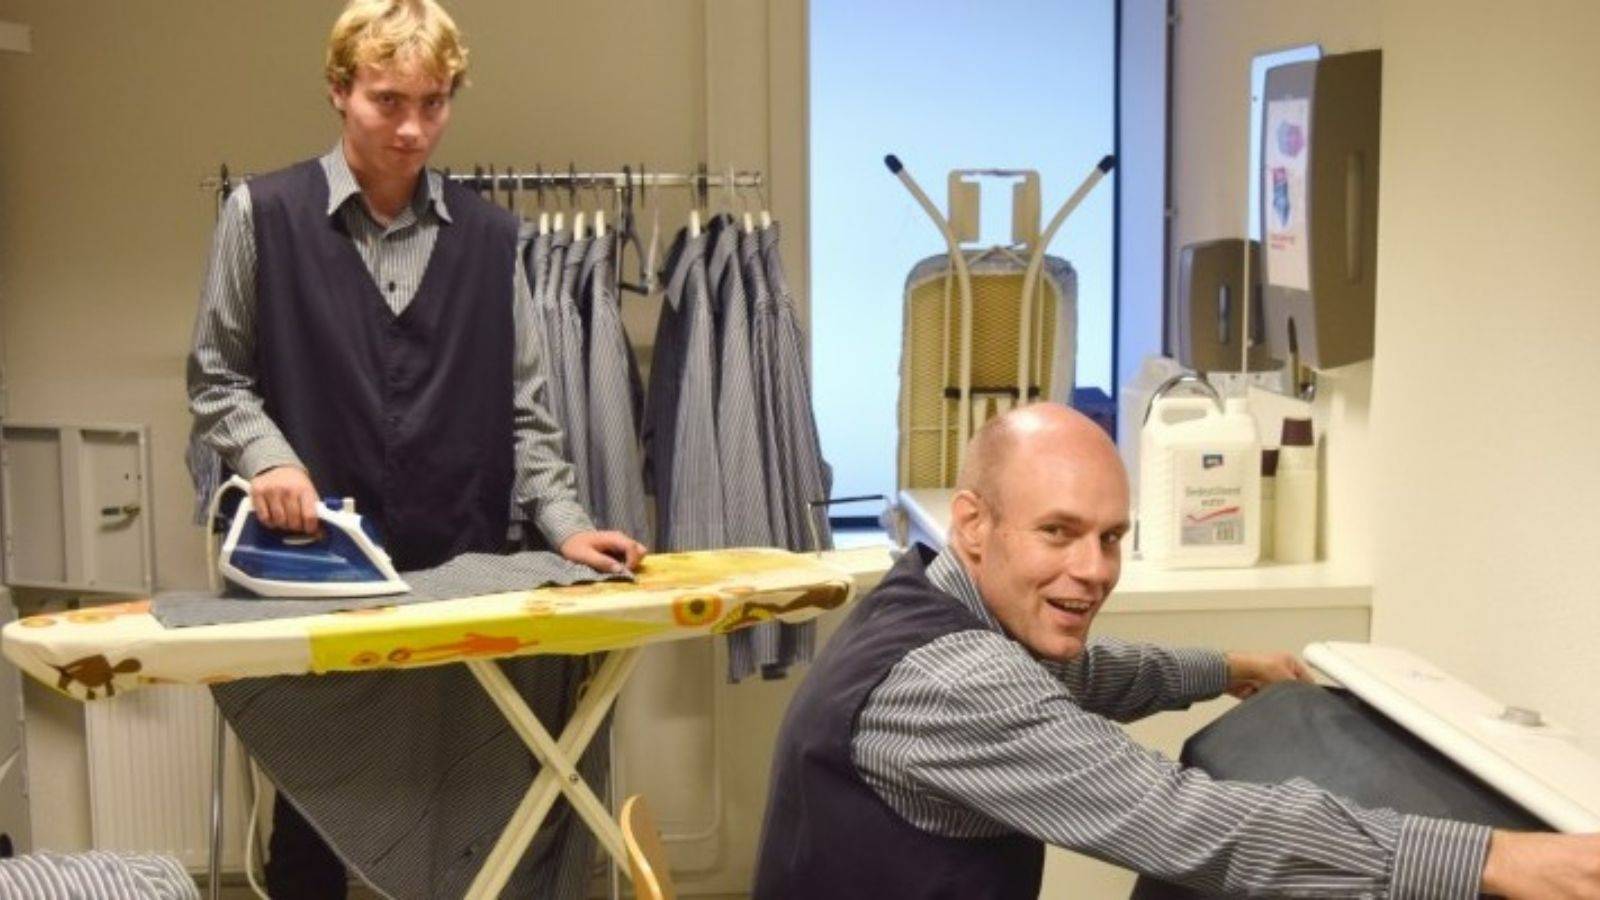 Cliënten strijken bij de Restaurant en servicegroep Ipse de Bruggen in Zoetermeer